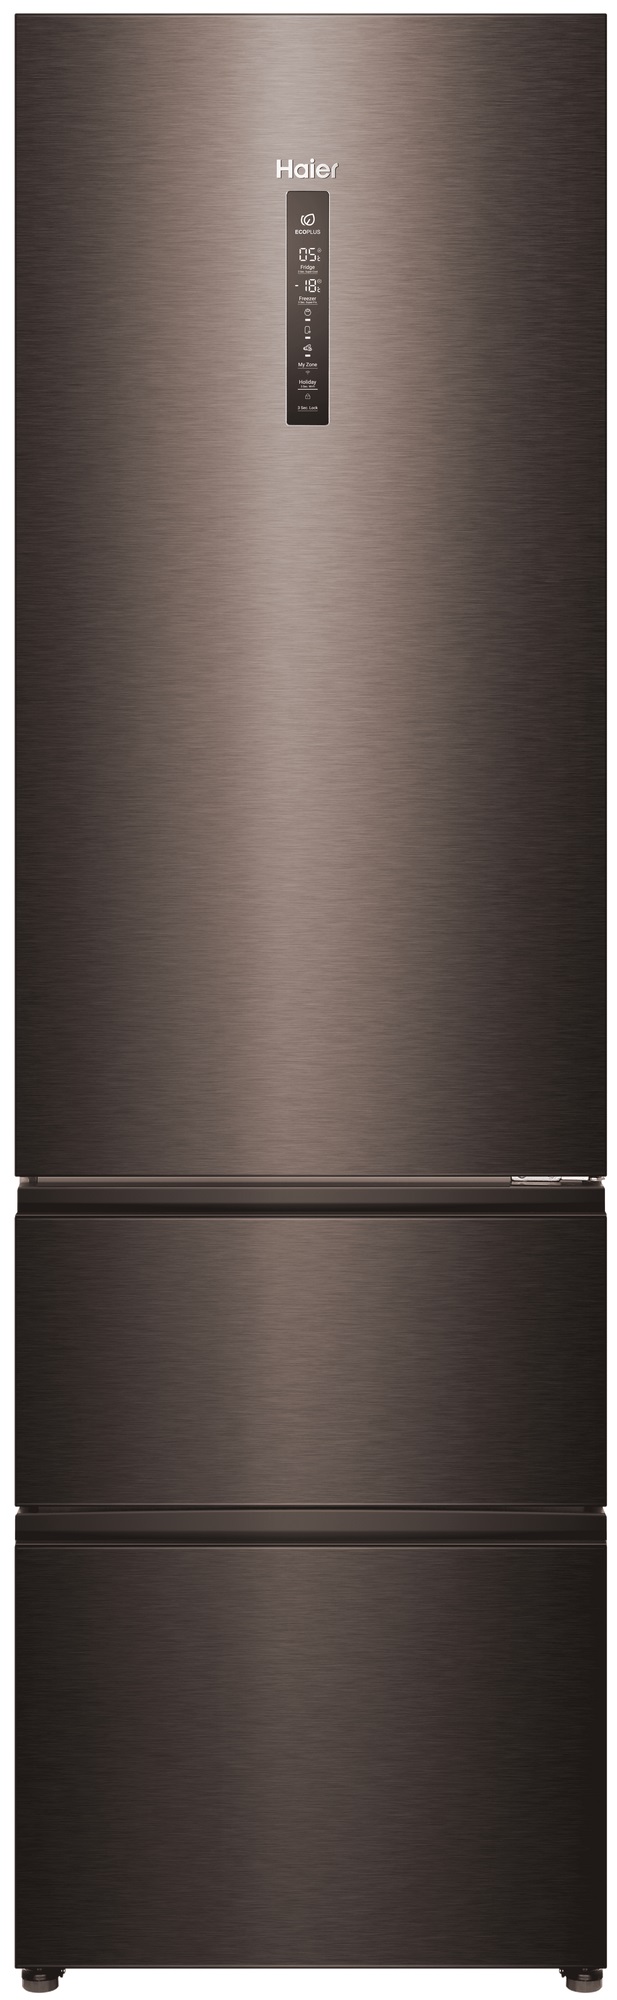 Холодильник Haier A4F739CDBGU1 серый холодильник haier hb18fgsaaaru серебристый серый